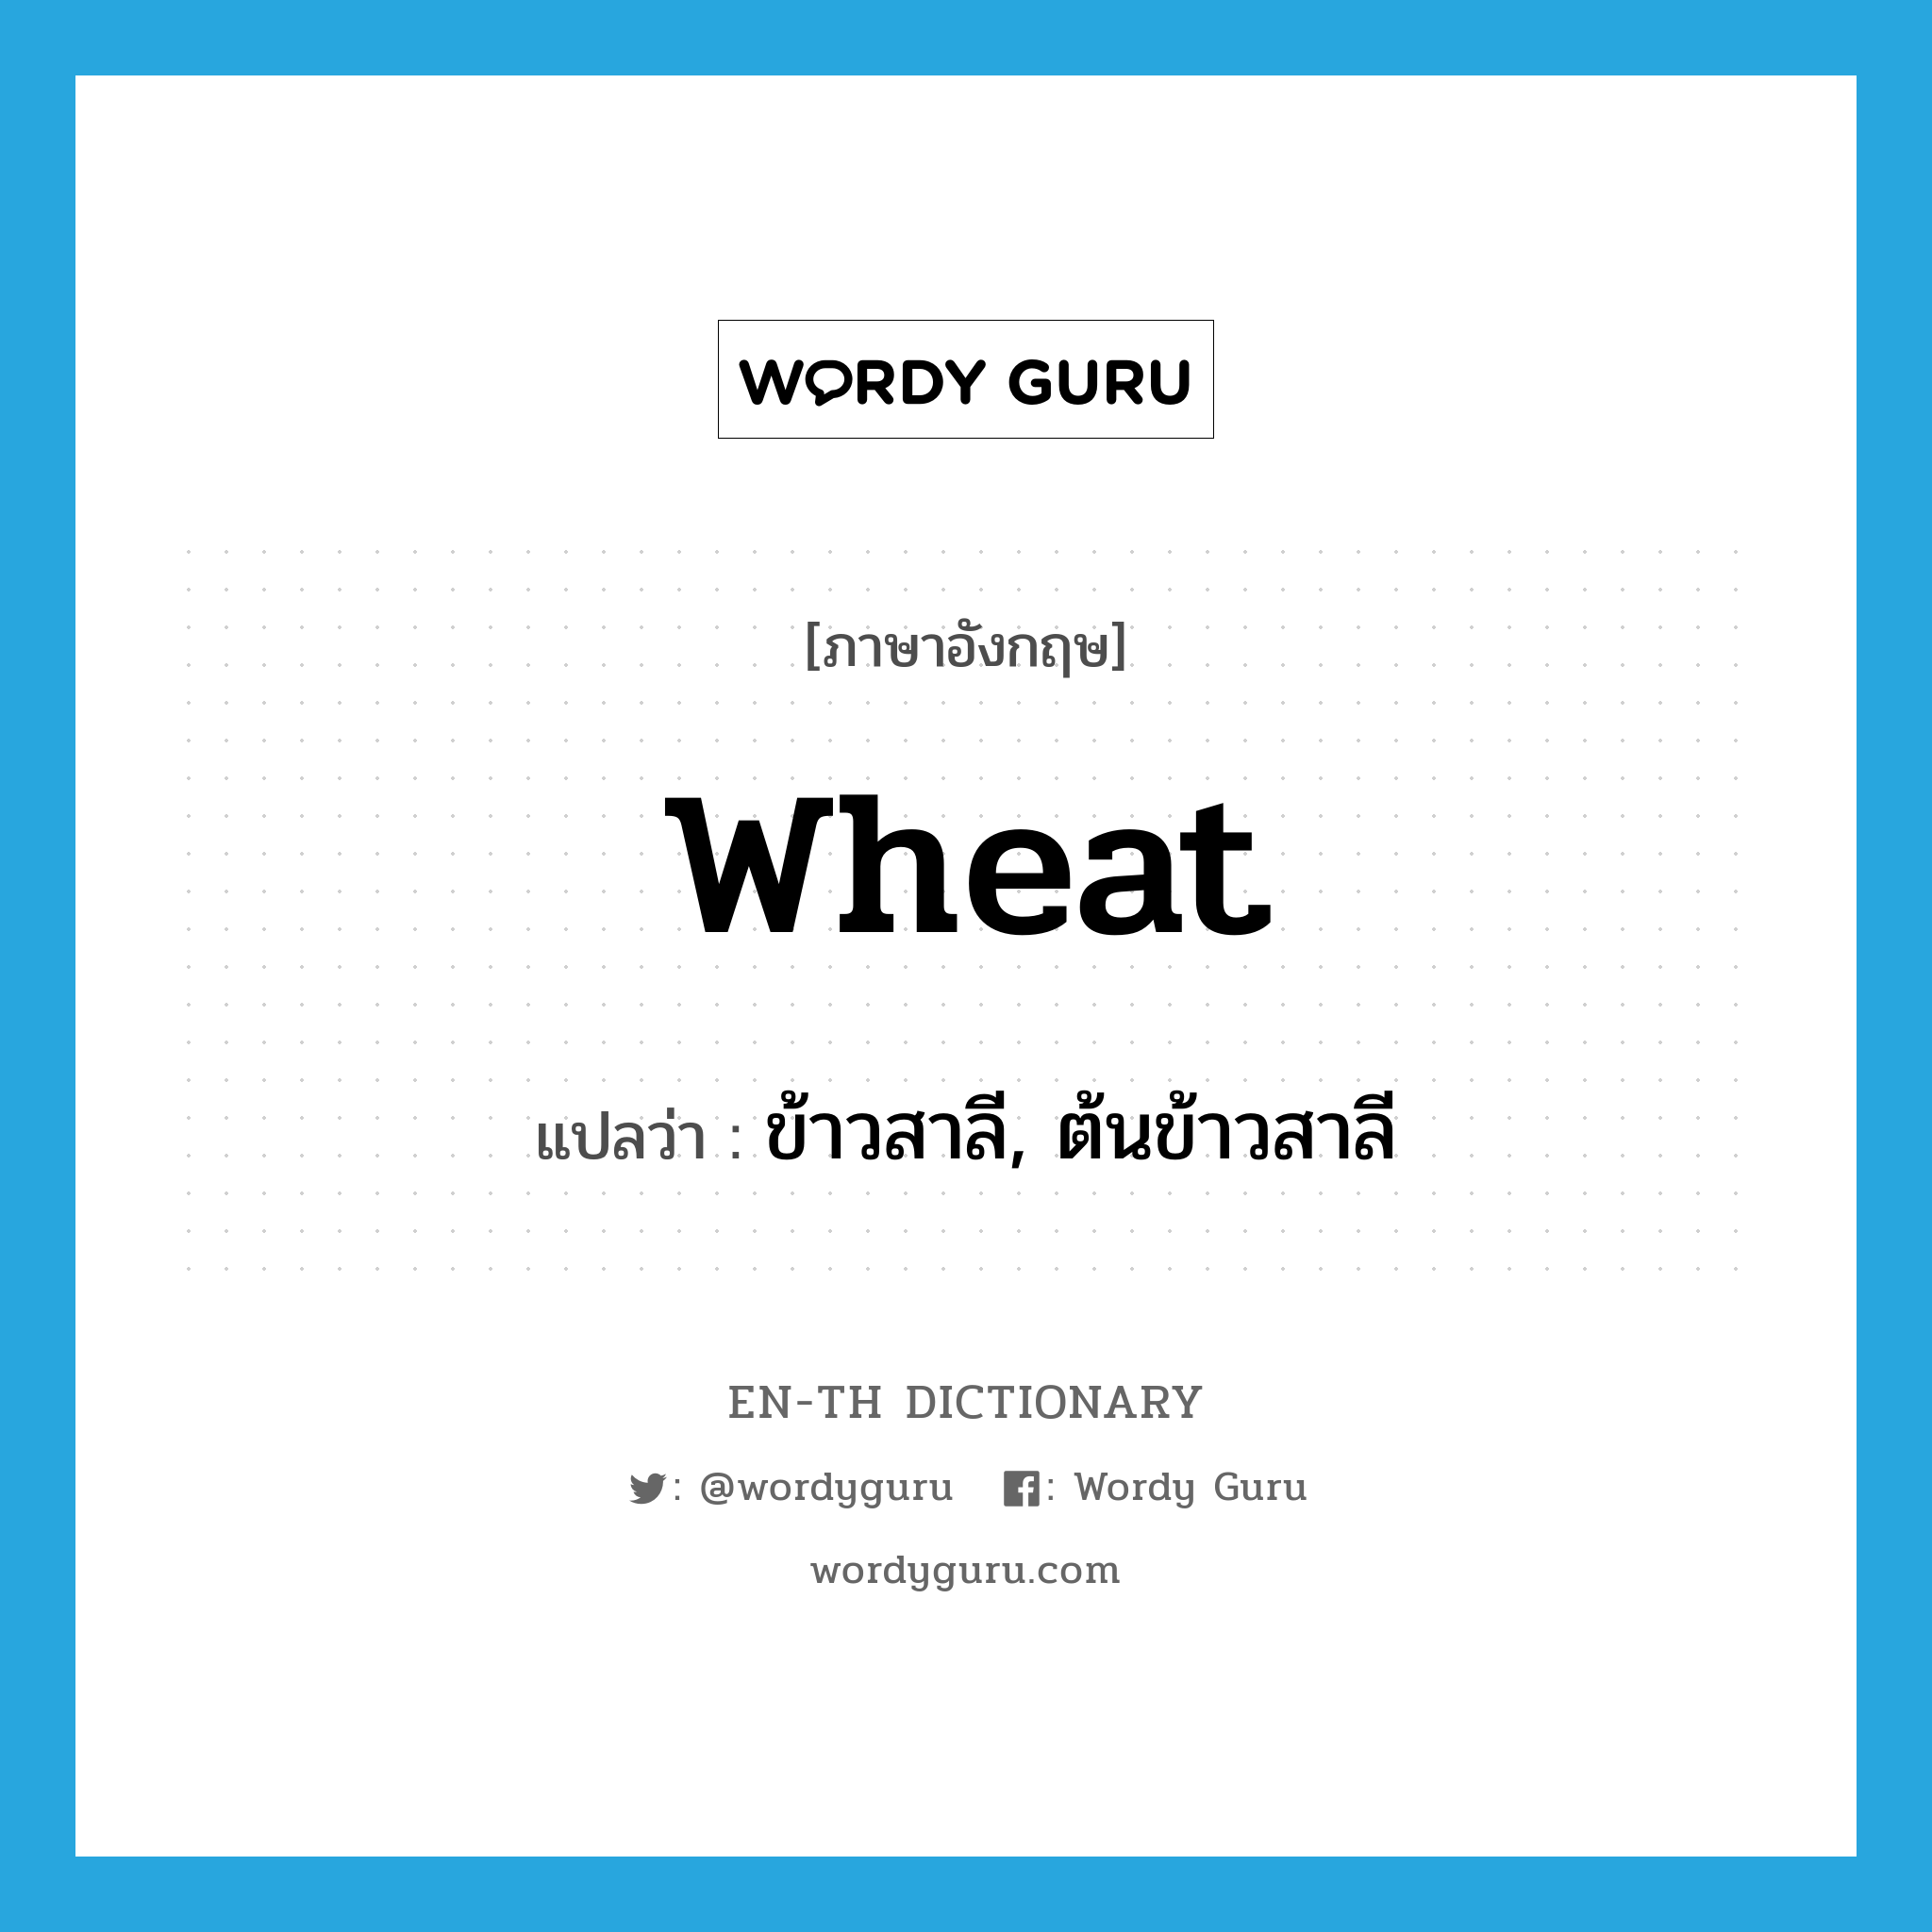 wheat แปลว่า?, คำศัพท์ภาษาอังกฤษ wheat แปลว่า ข้าวสาลี, ต้นข้าวสาลี ประเภท N หมวด N